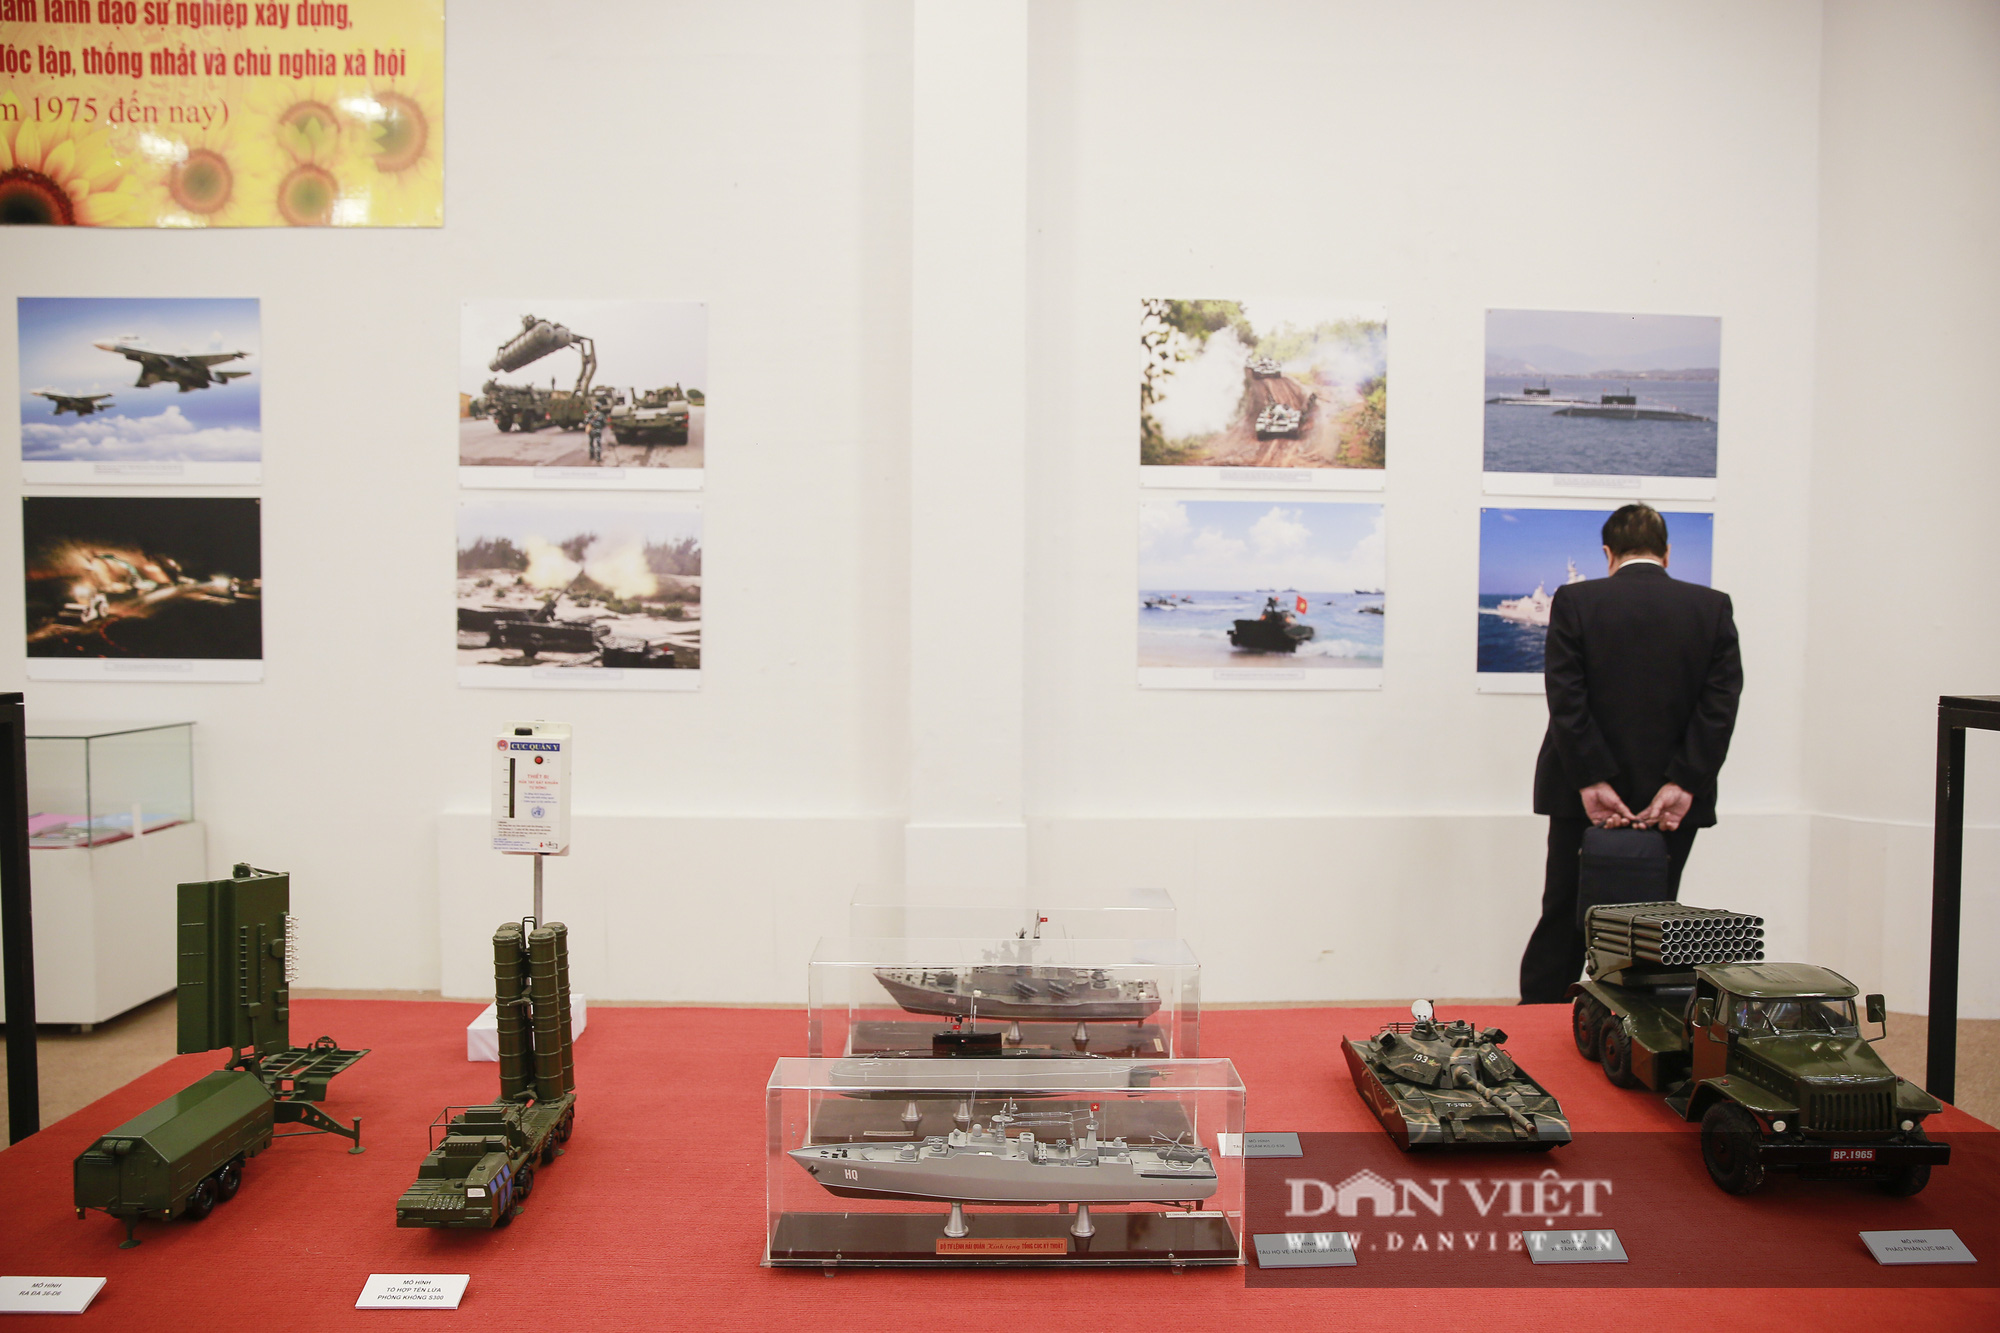 Cận cảnh những tư liệu quý và khí tài quân sự Việt Nam tại triển lãm “Đảng ta thật là vĩ đại” - Ảnh 5.